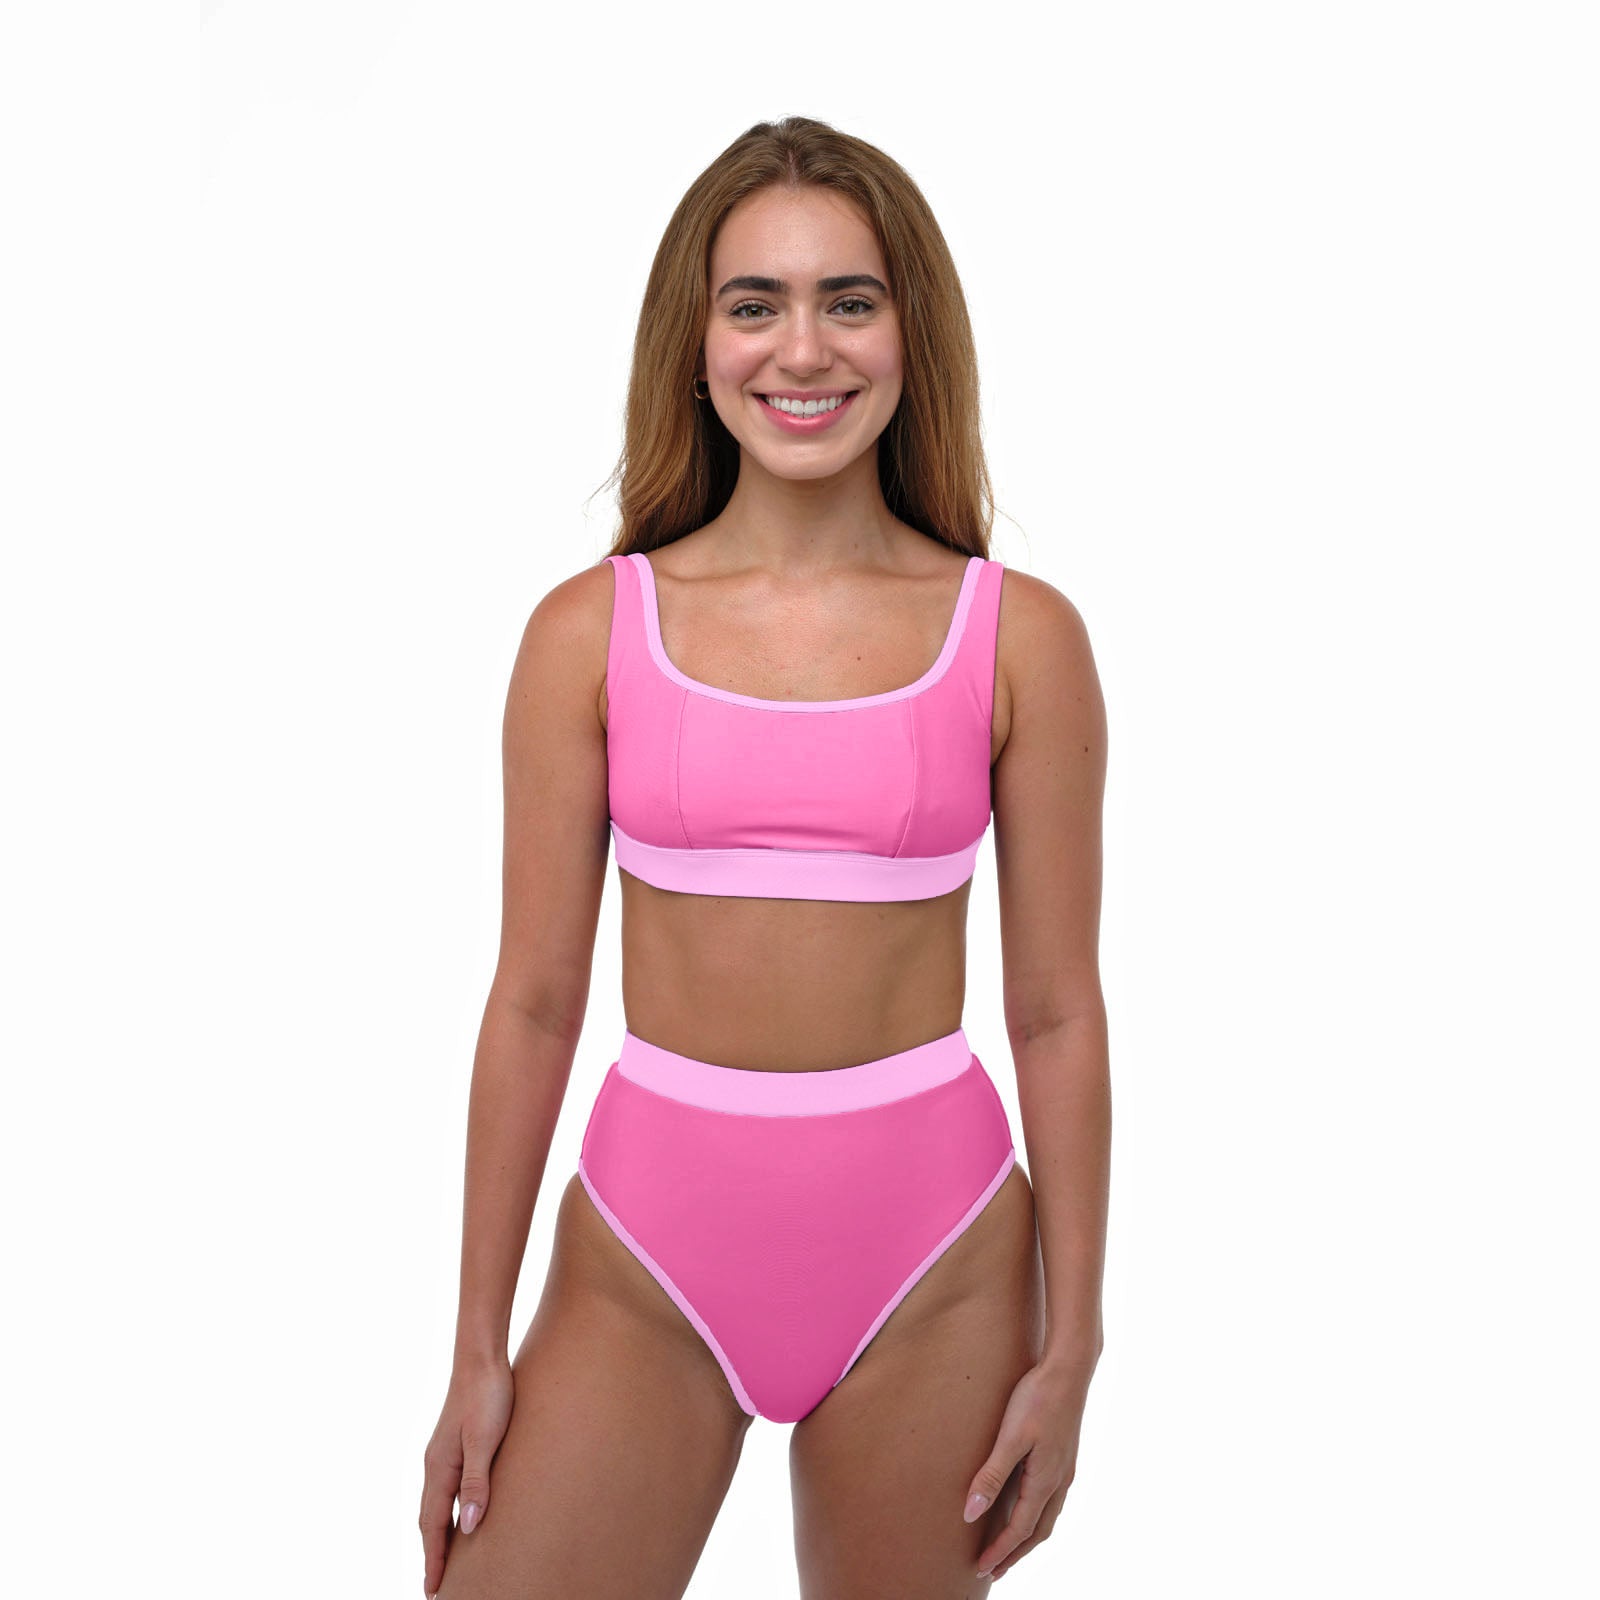 High-rise full-coverage bikini bottom in pink limone print